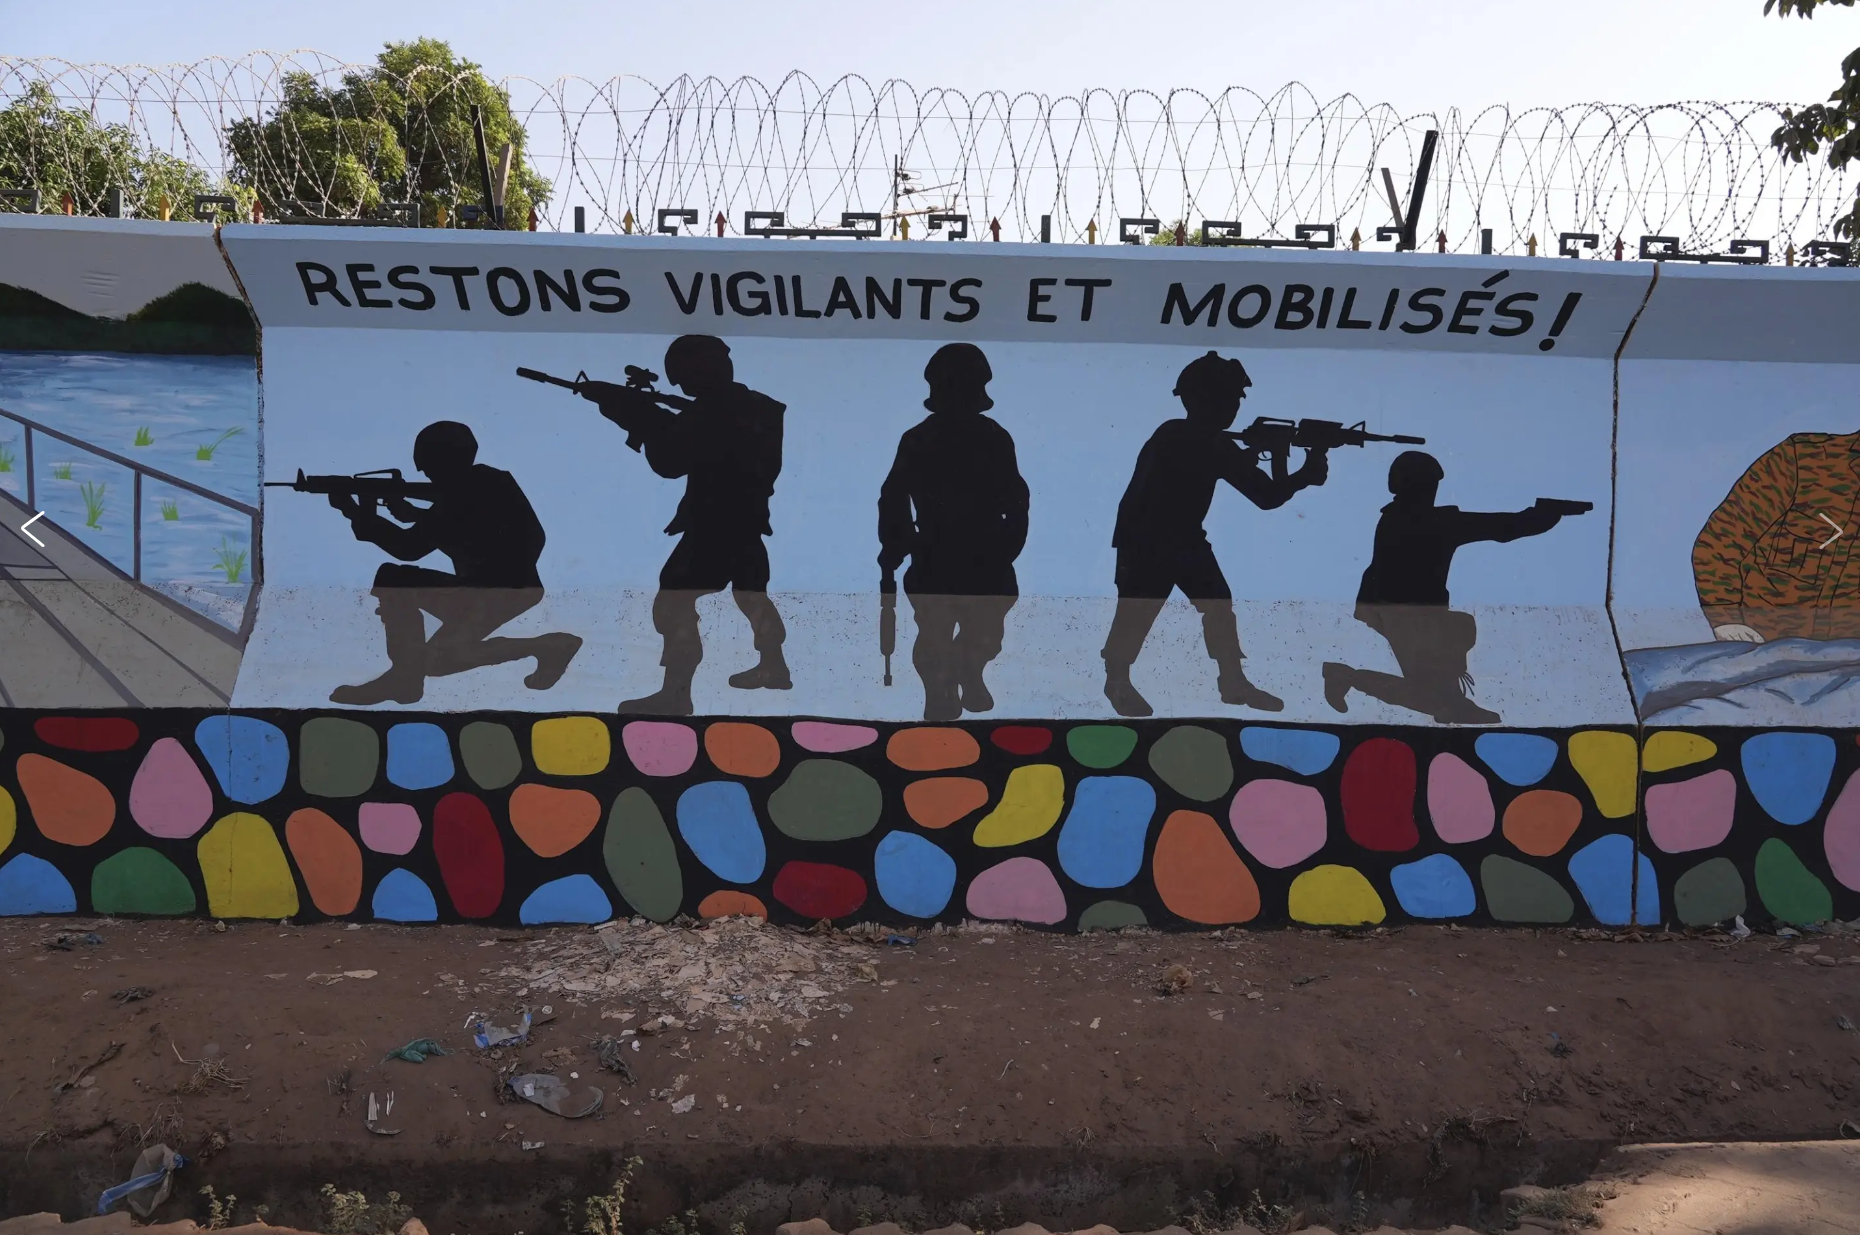 A mural in Ouagadougou, Burkina Faso. Photo by AP.